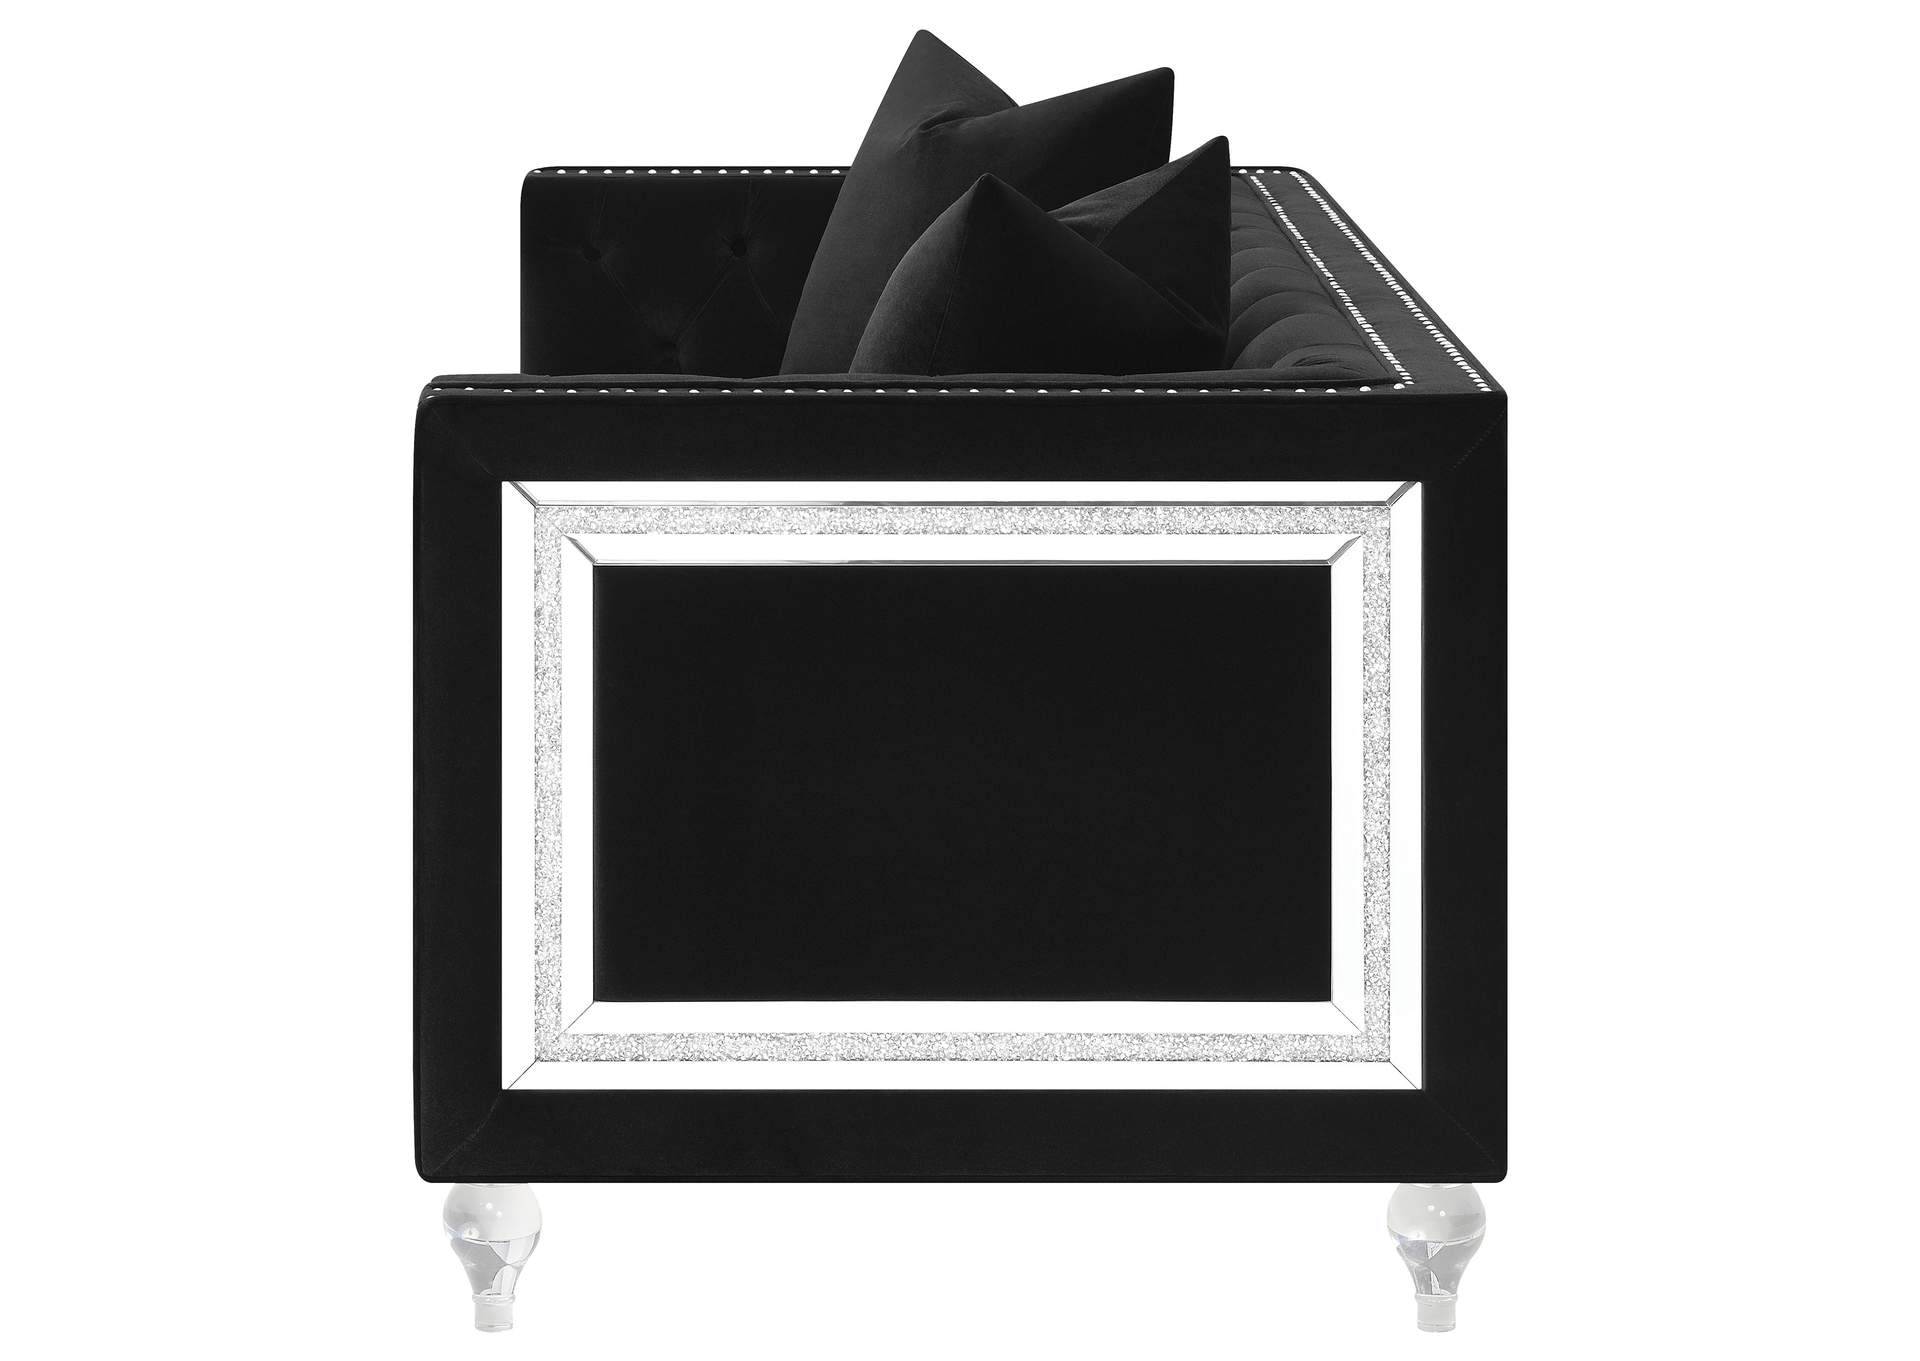 Delilah Upholstered Tufted Tuxedo Arm Loveseat Black,Coaster Furniture